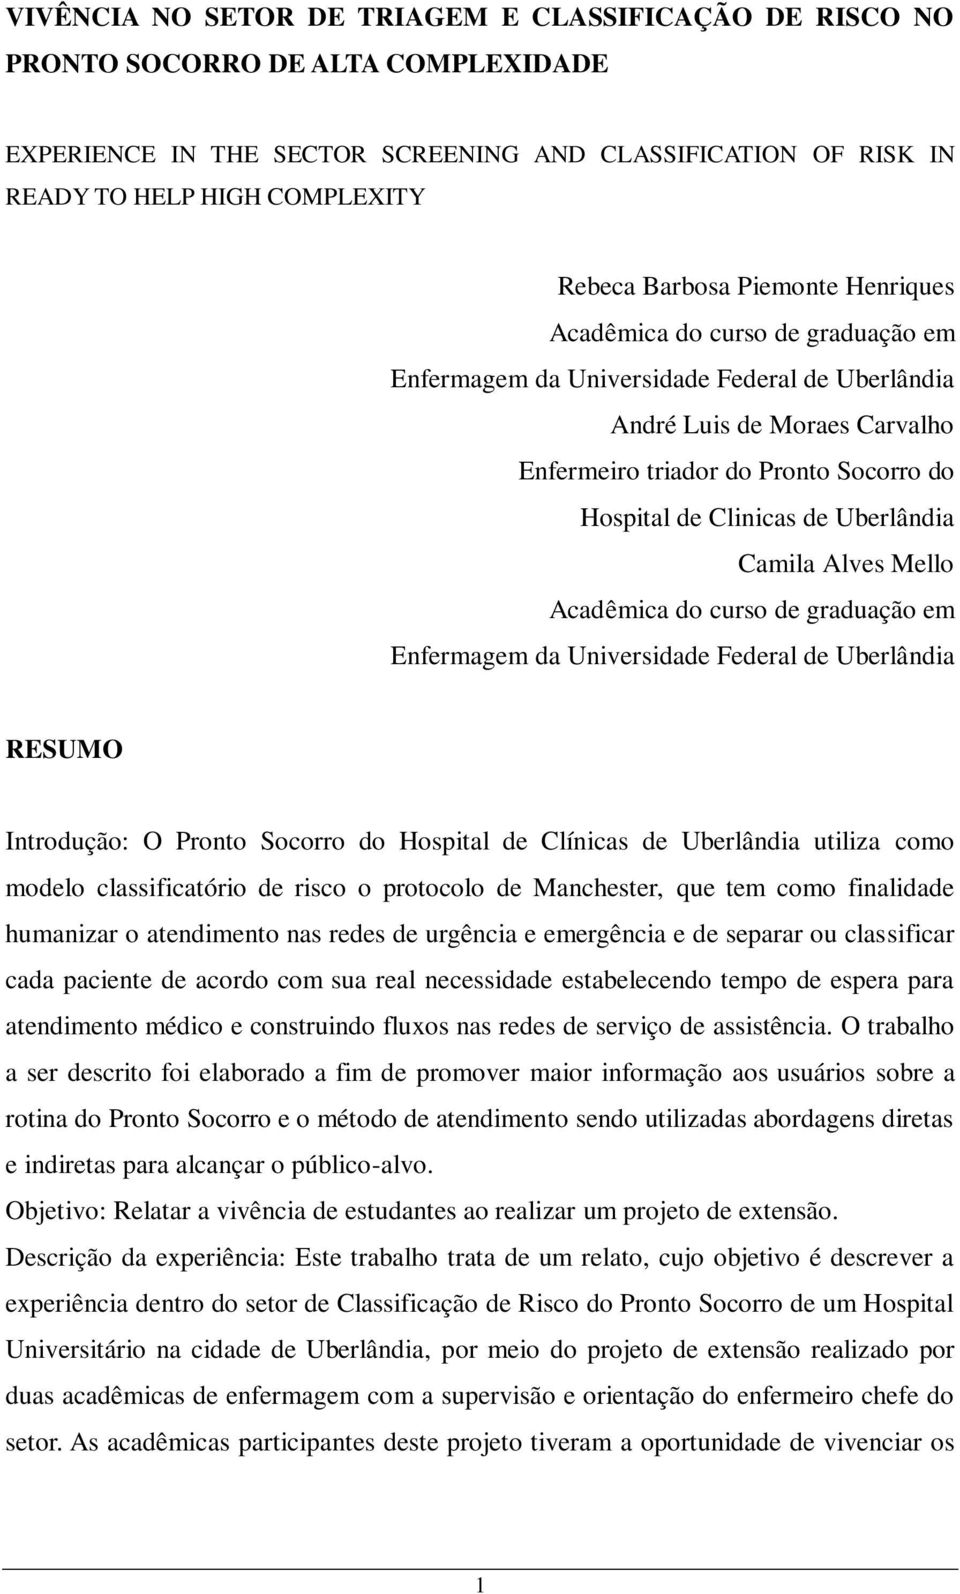 Clinicas de Uberlândia Camila Alves Mello Acadêmica do curso de graduação em Enfermagem da Universidade Federal de Uberlândia RESUMO Introdução: O Pronto Socorro do Hospital de Clínicas de Uberlândia